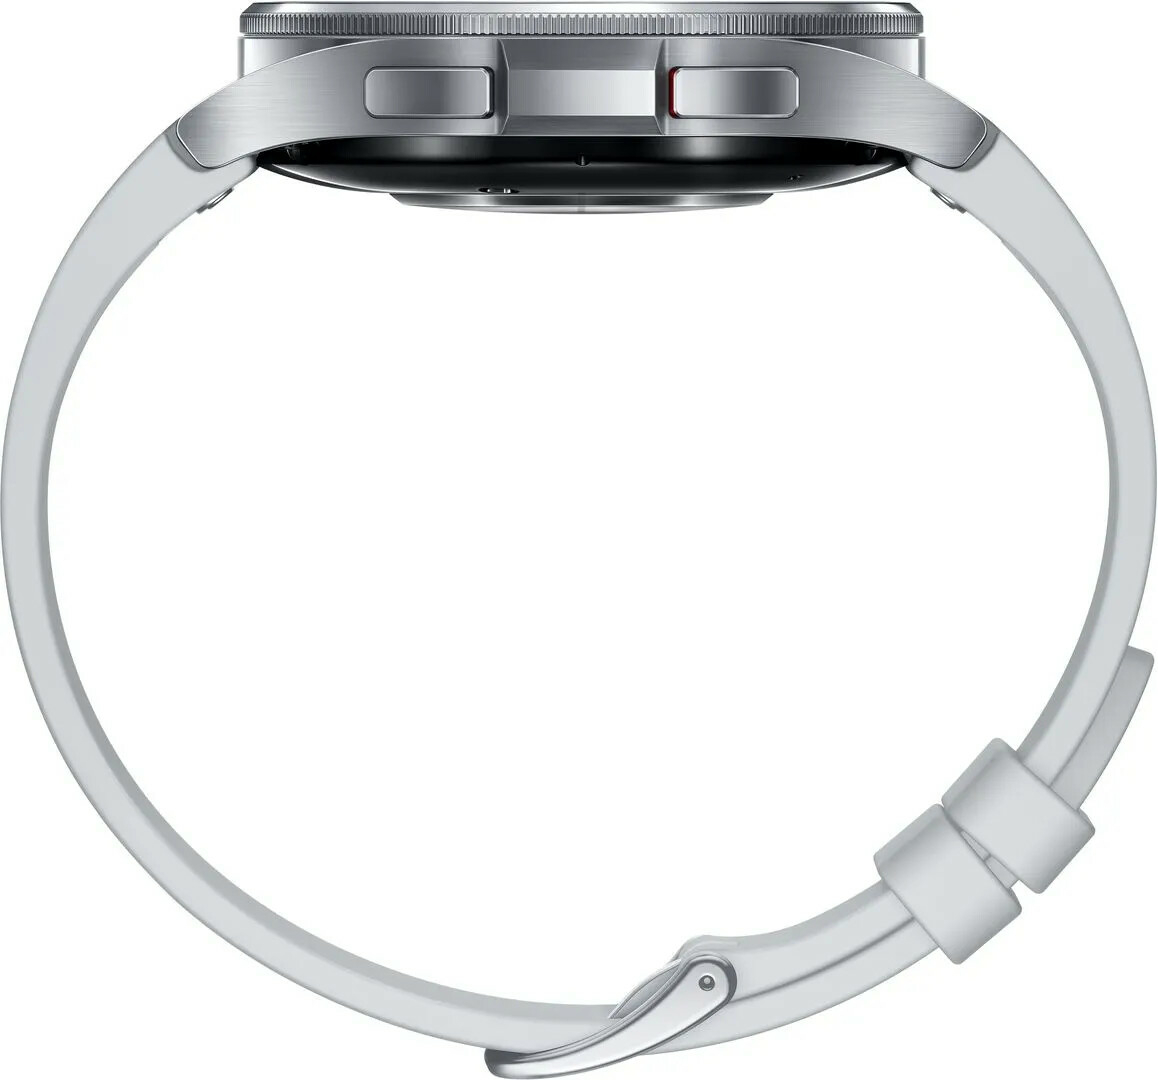 Умные часы Samsung Galaxy Watch 6 Classic, 47mm Global Silver (Серебристый)